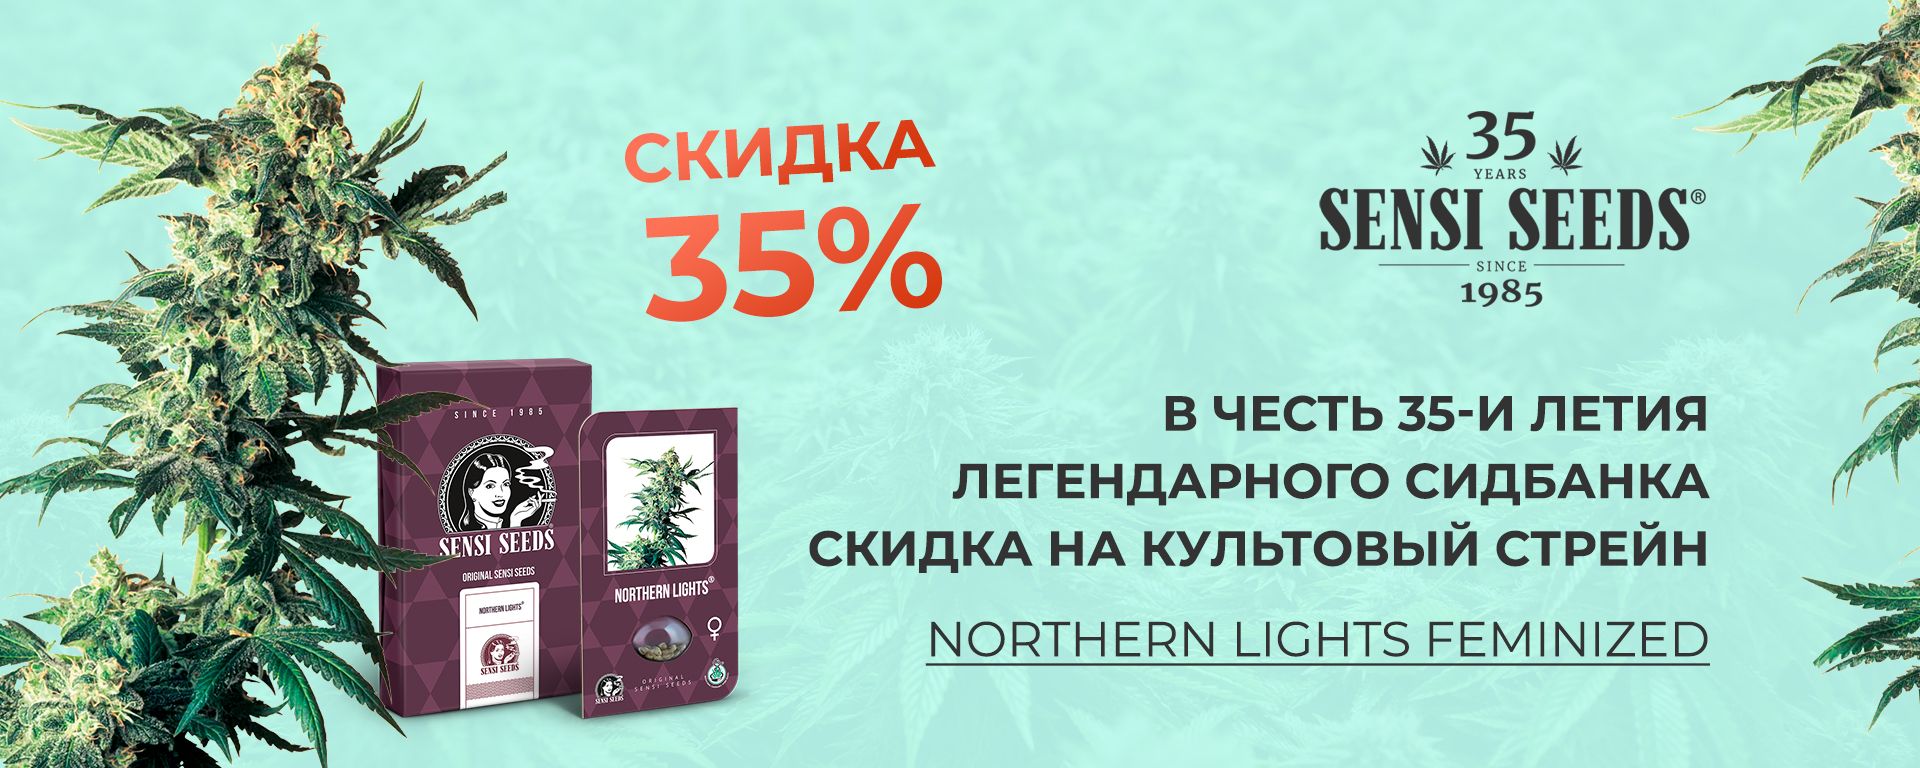 Продаже семян конопли в украине darknet websites hydraruzxpnew4af